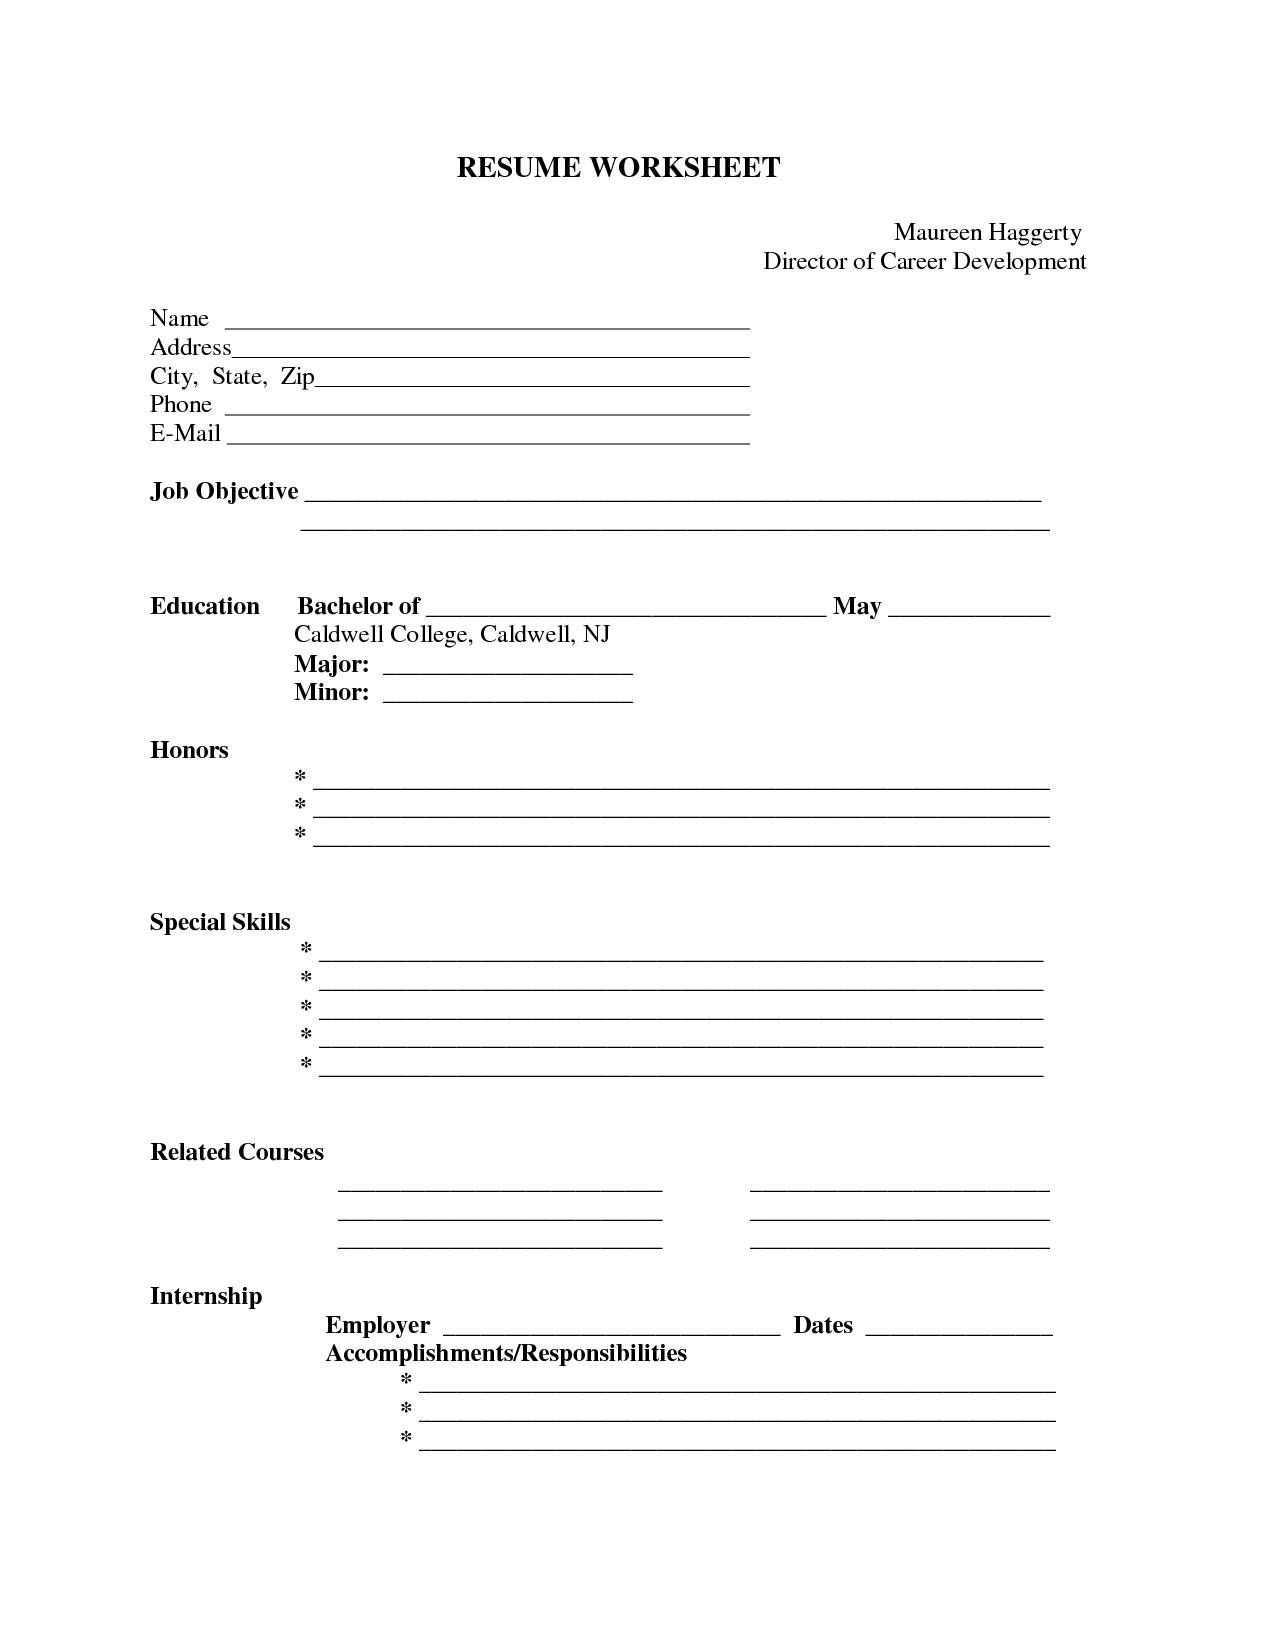 Free Printable Resume Samples | Puntosalud Throughout Free Printable Resume Templates Microsoft Word